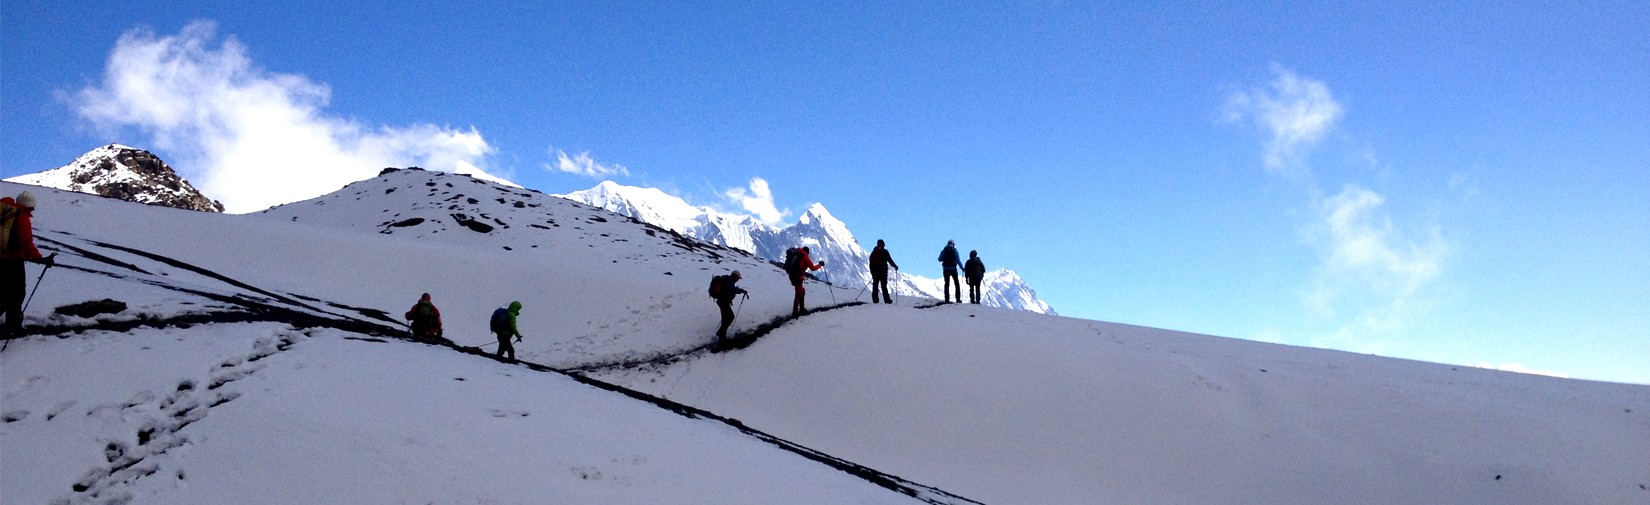 Trekking in Annapurna-region way to Thorangla pass 5416m height